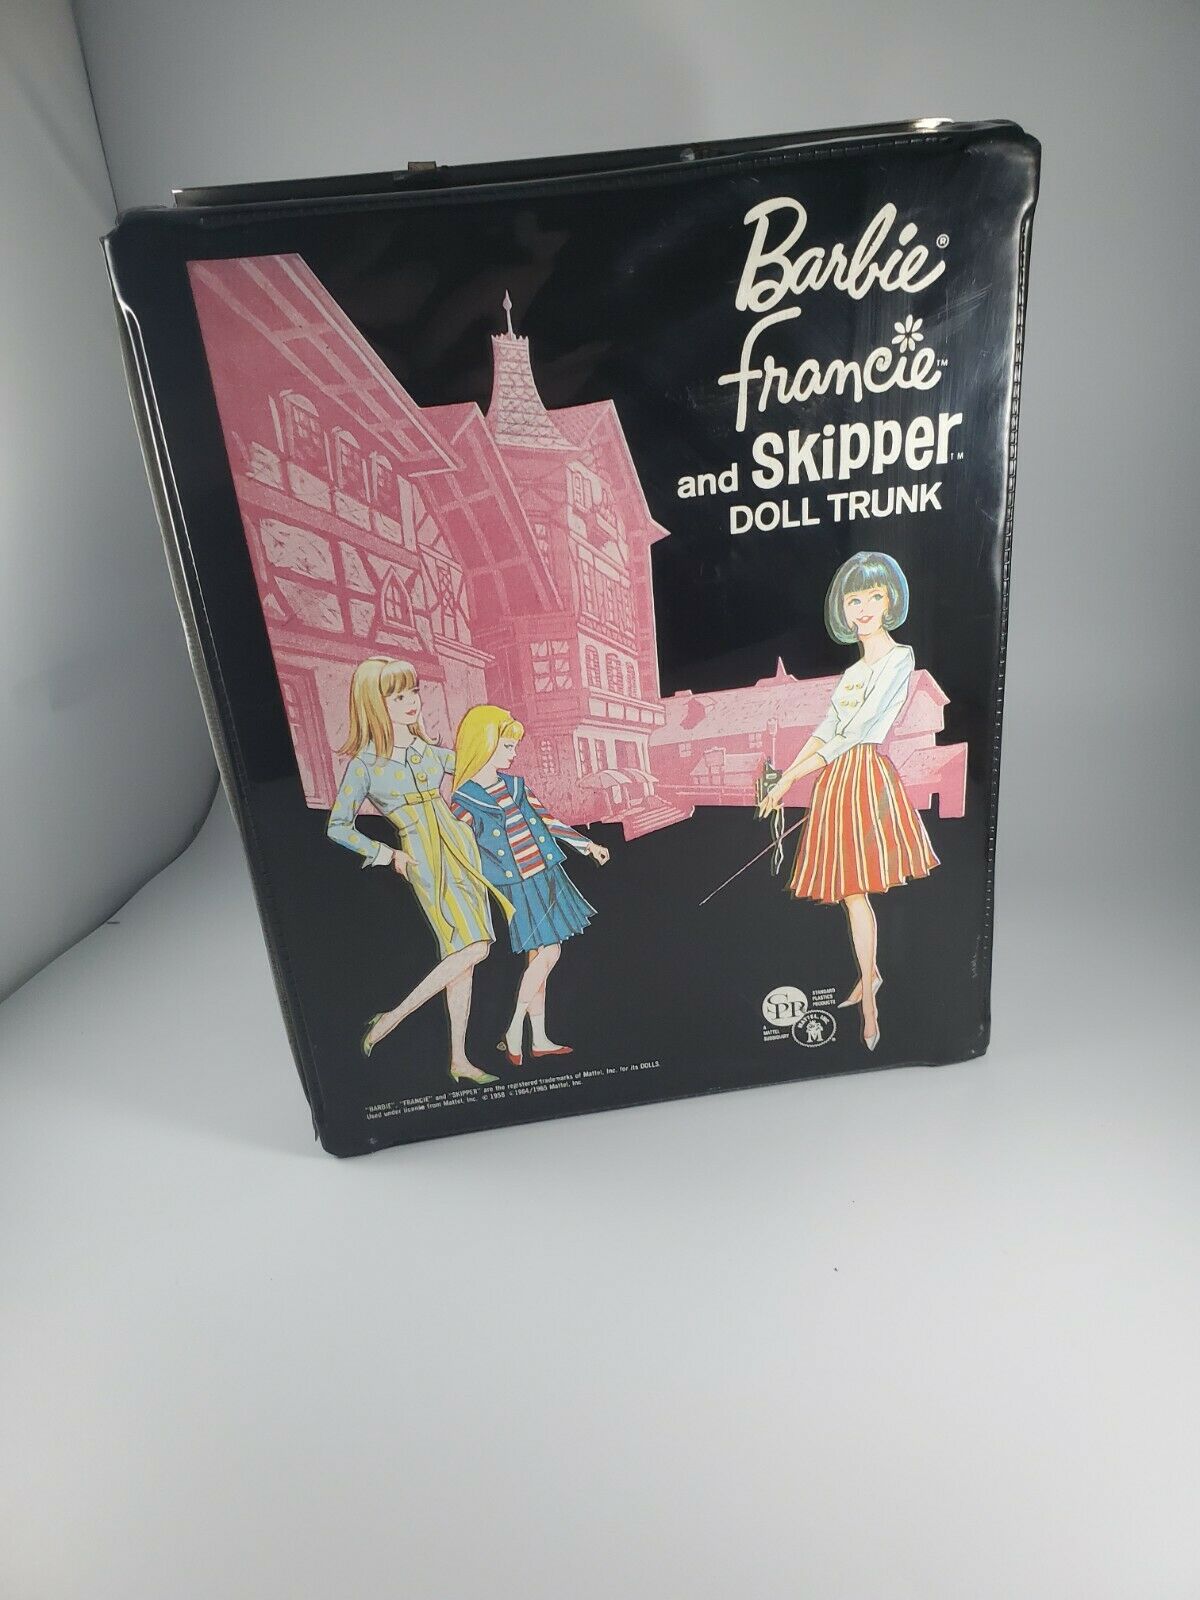 1958/1965 Barbie-francie+skipper Rare "european" Tudor Mansion Doll Double Trunk